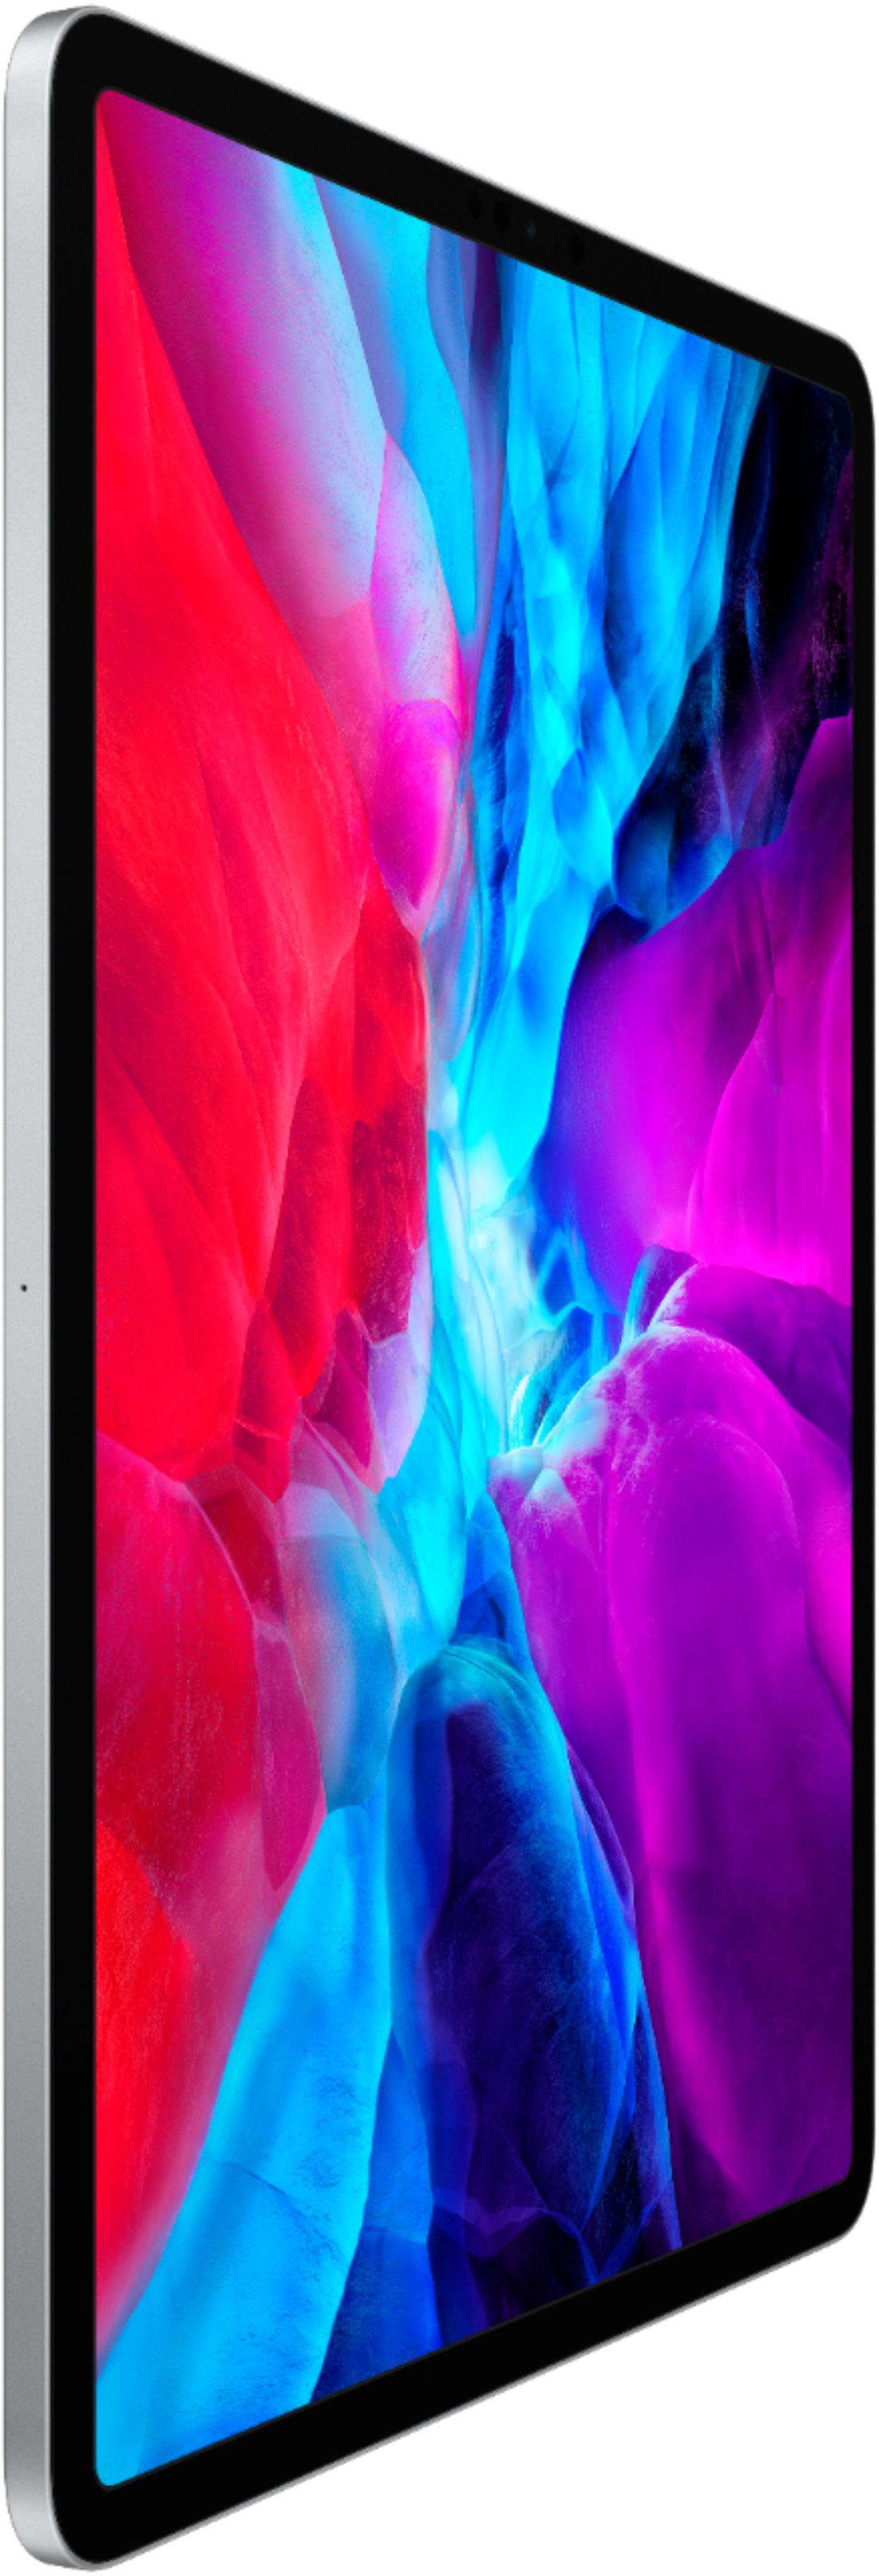 PC/タブレット タブレット 3個セット・送料無料 iPad Pro 12.9インチ(第4世代) Wi-Fiモデル 